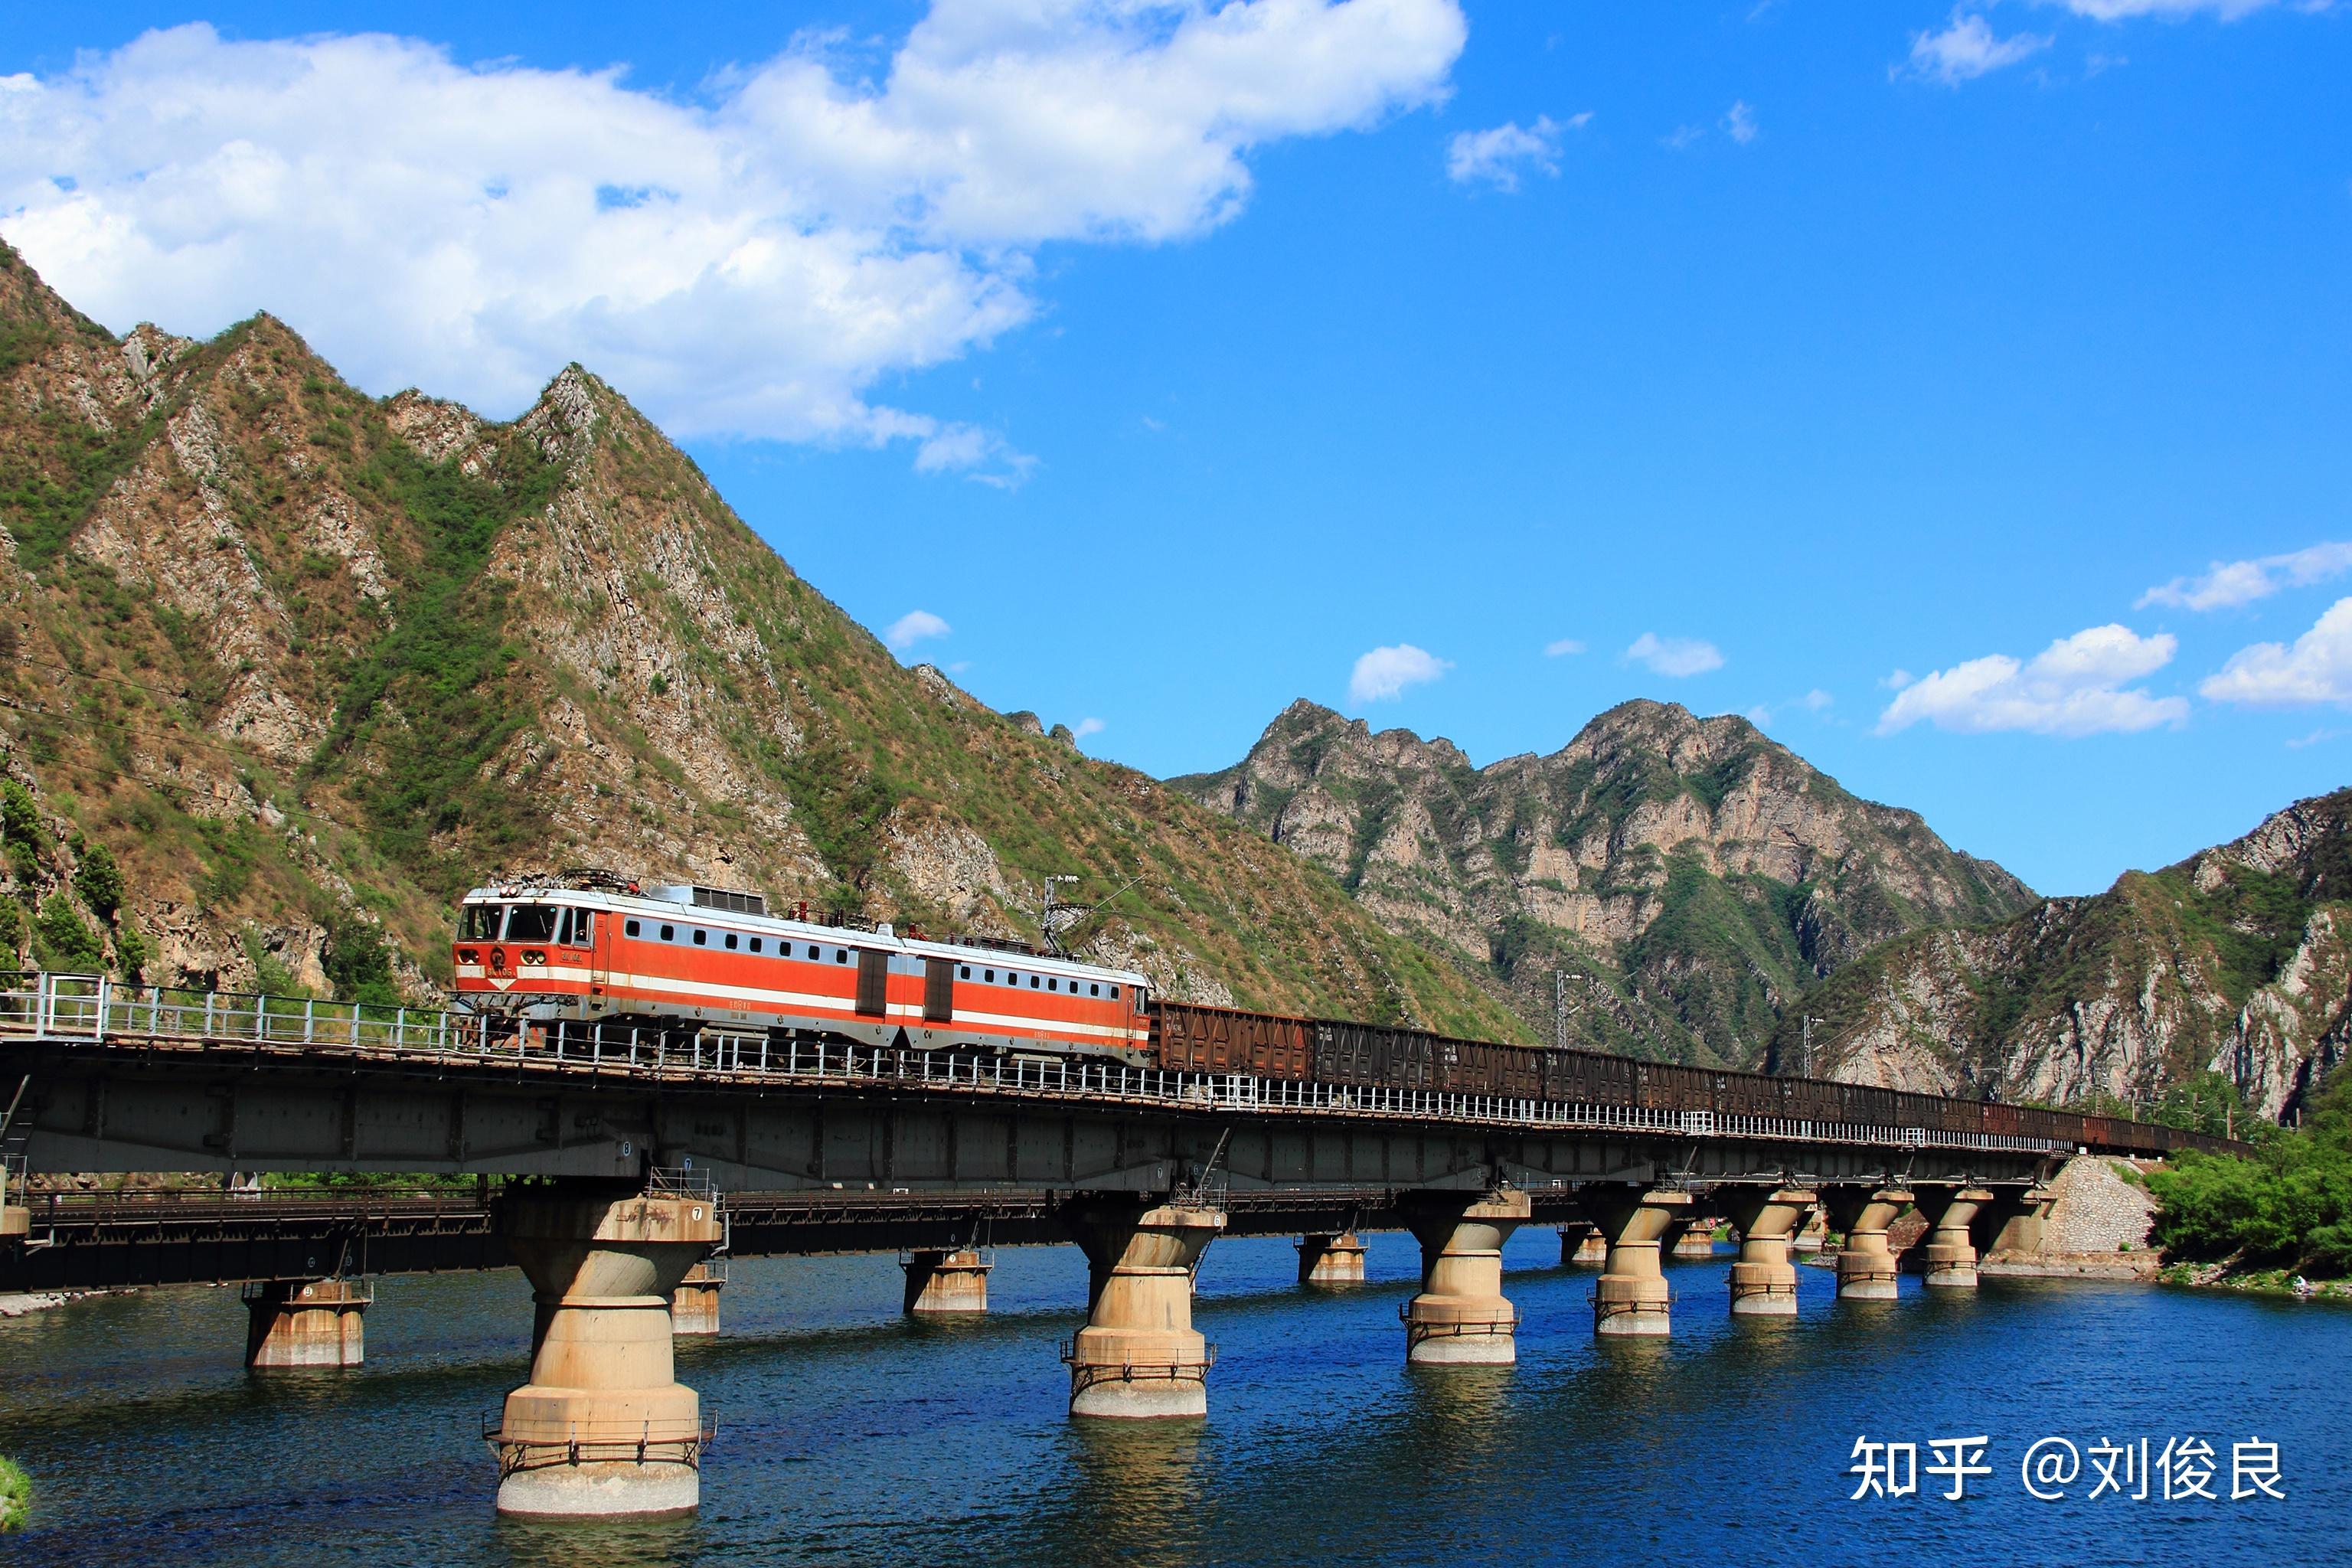 20112021我镜头中的中国铁道风景线